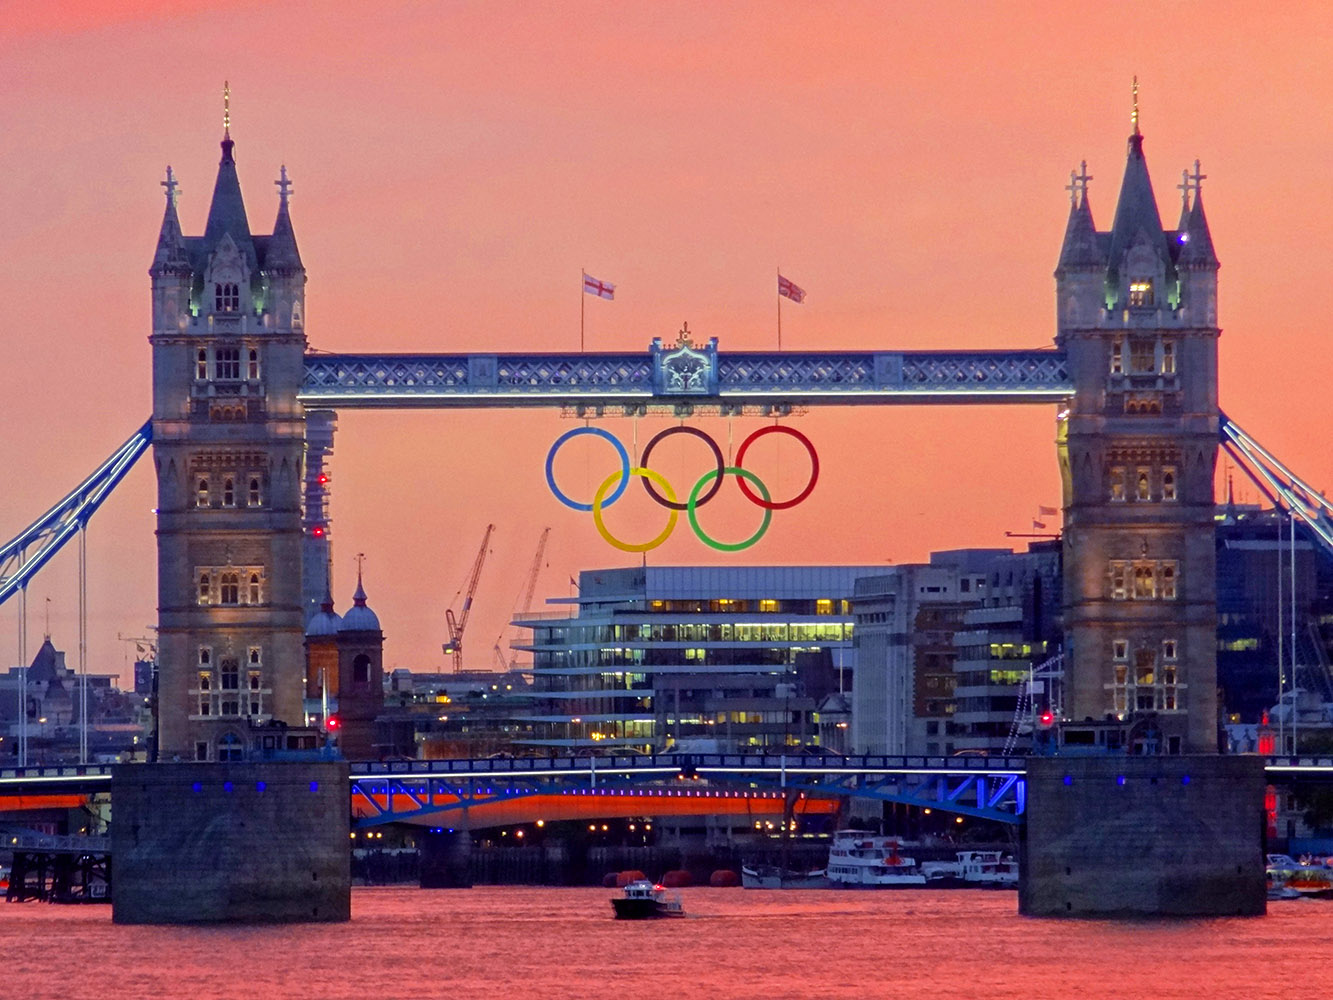 Οι Ολυμπιακοί Αγώνες ωφέλησαν οικονομικά τη Βρετανία